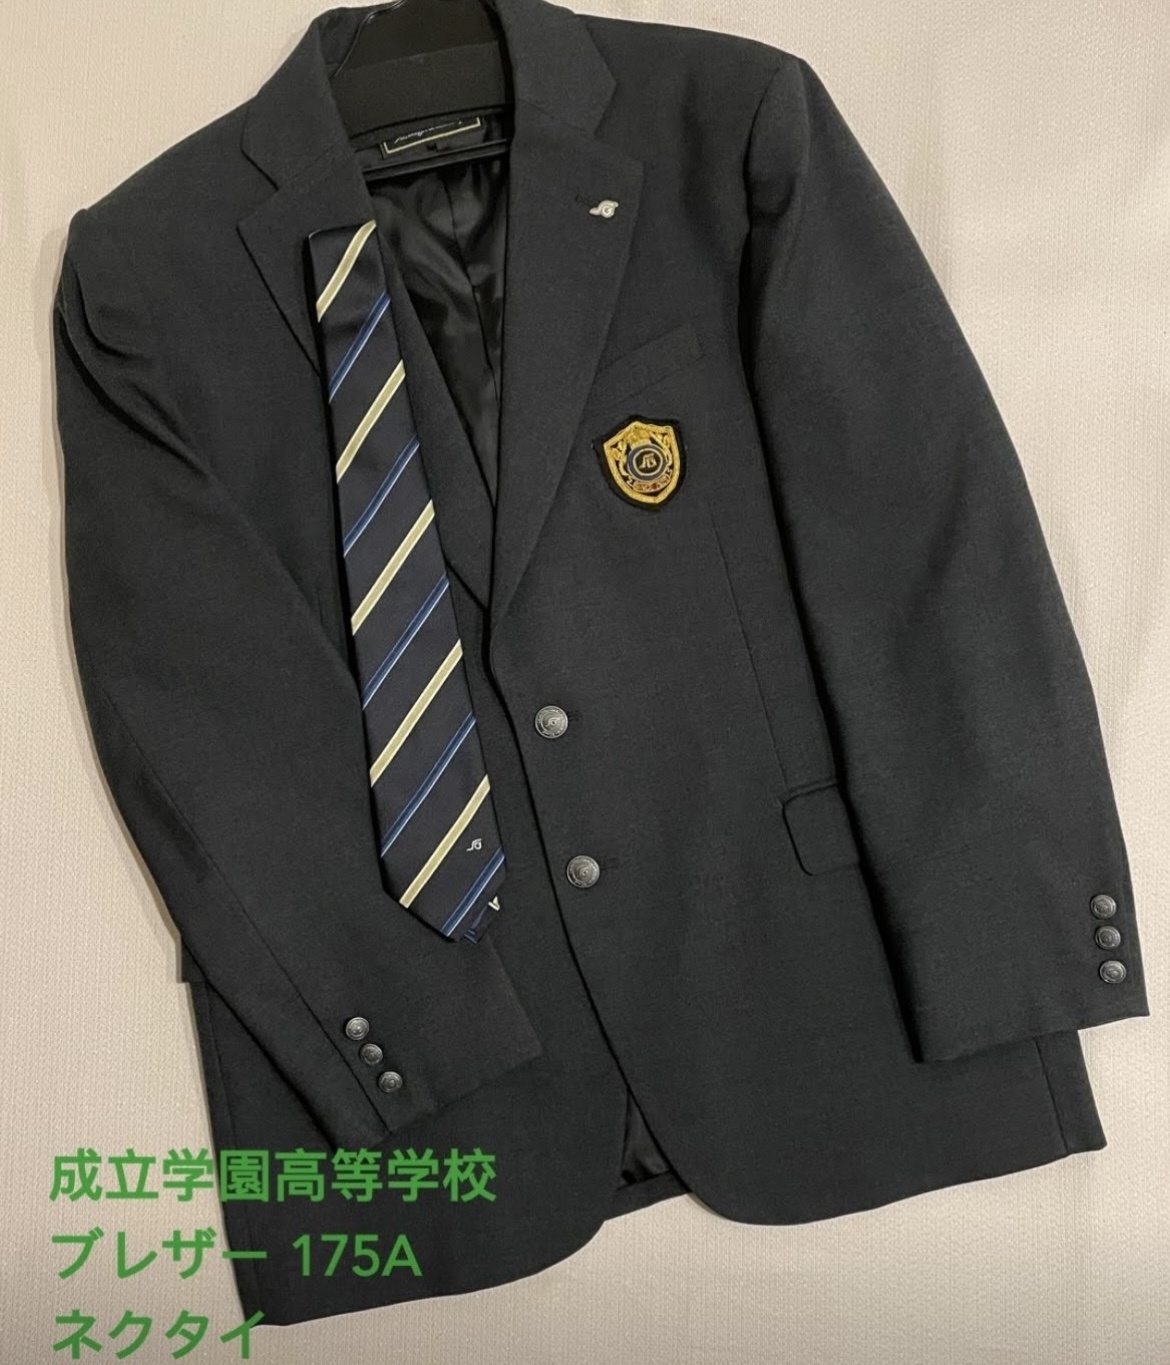 30年度 長崎鶴洋高等学校 男子制服 - 長崎県の服/ファッション